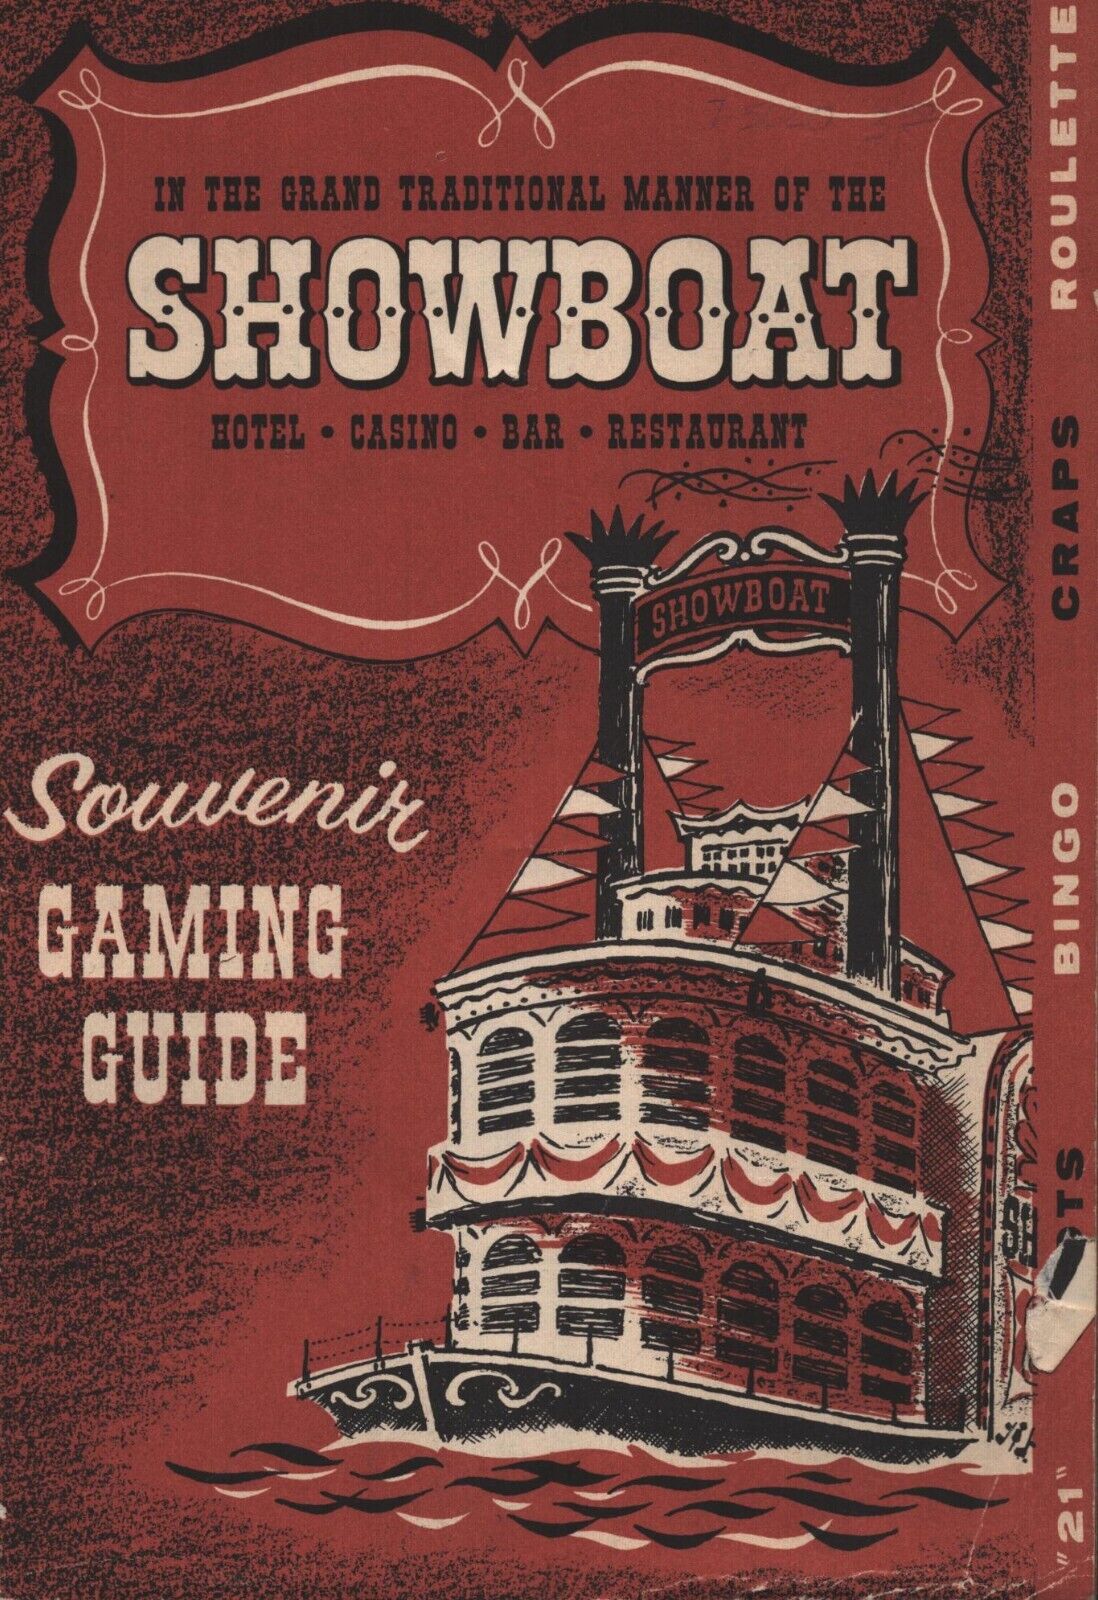 Showboat Casino - Las Vegas, Nevada - Souvenir Gaming Guide - 1954